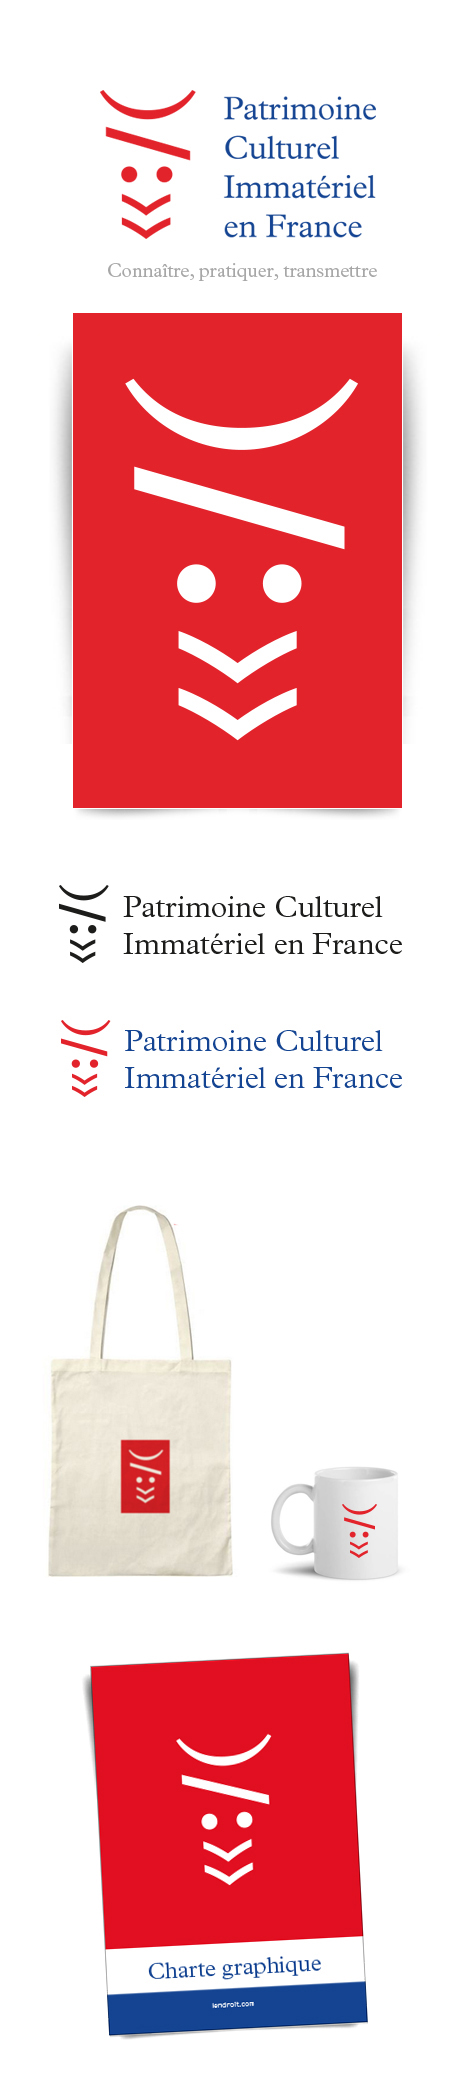 PATRIMOINE CULTUREL IMMATERIEL EN FRANCE